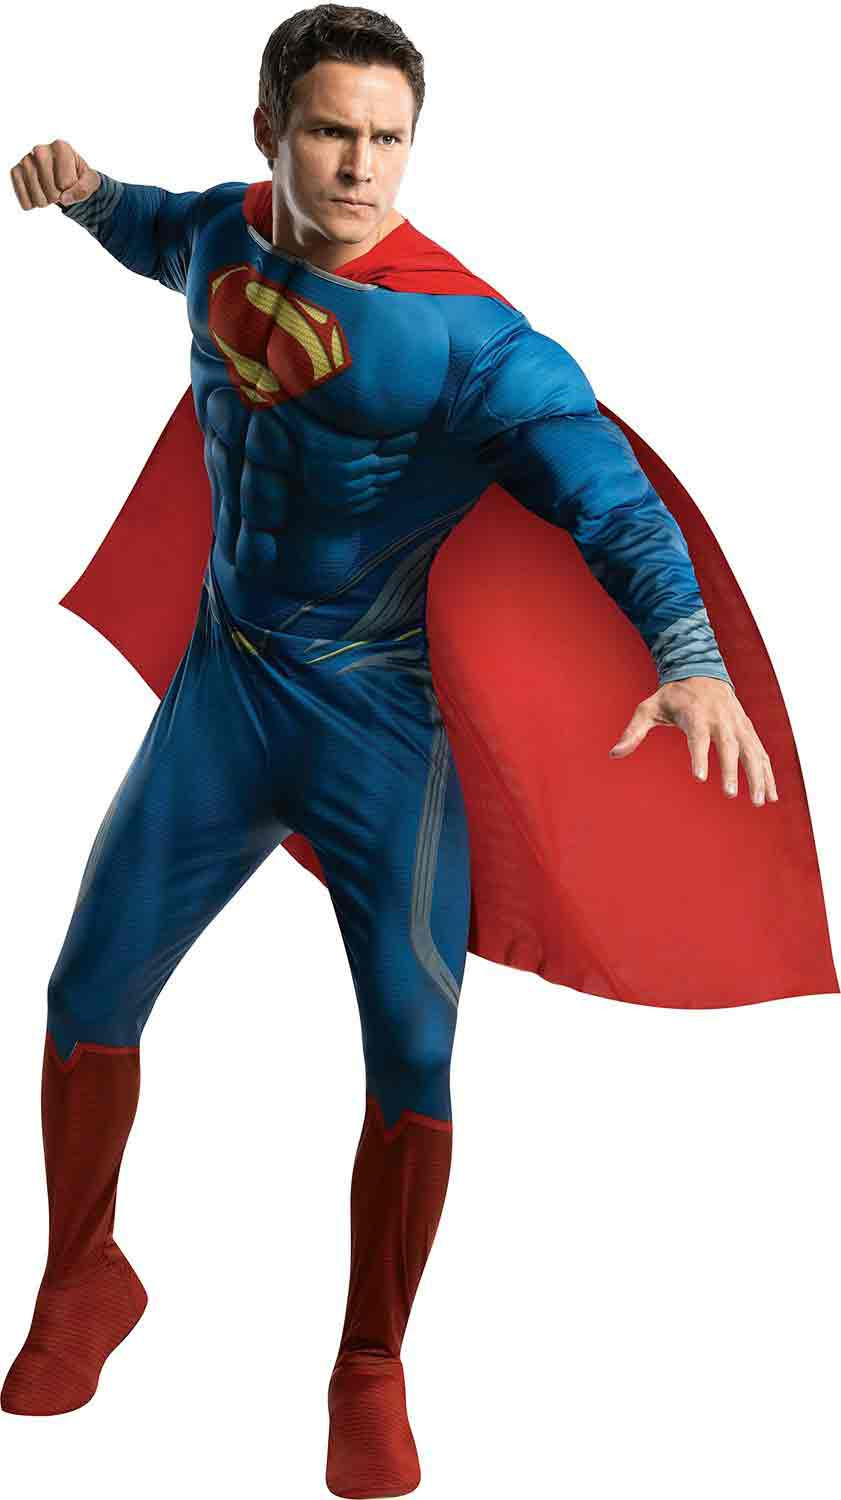 Superman Costume DIY
 The Ultimate Clark Kent Superman Costumes DIY Guide